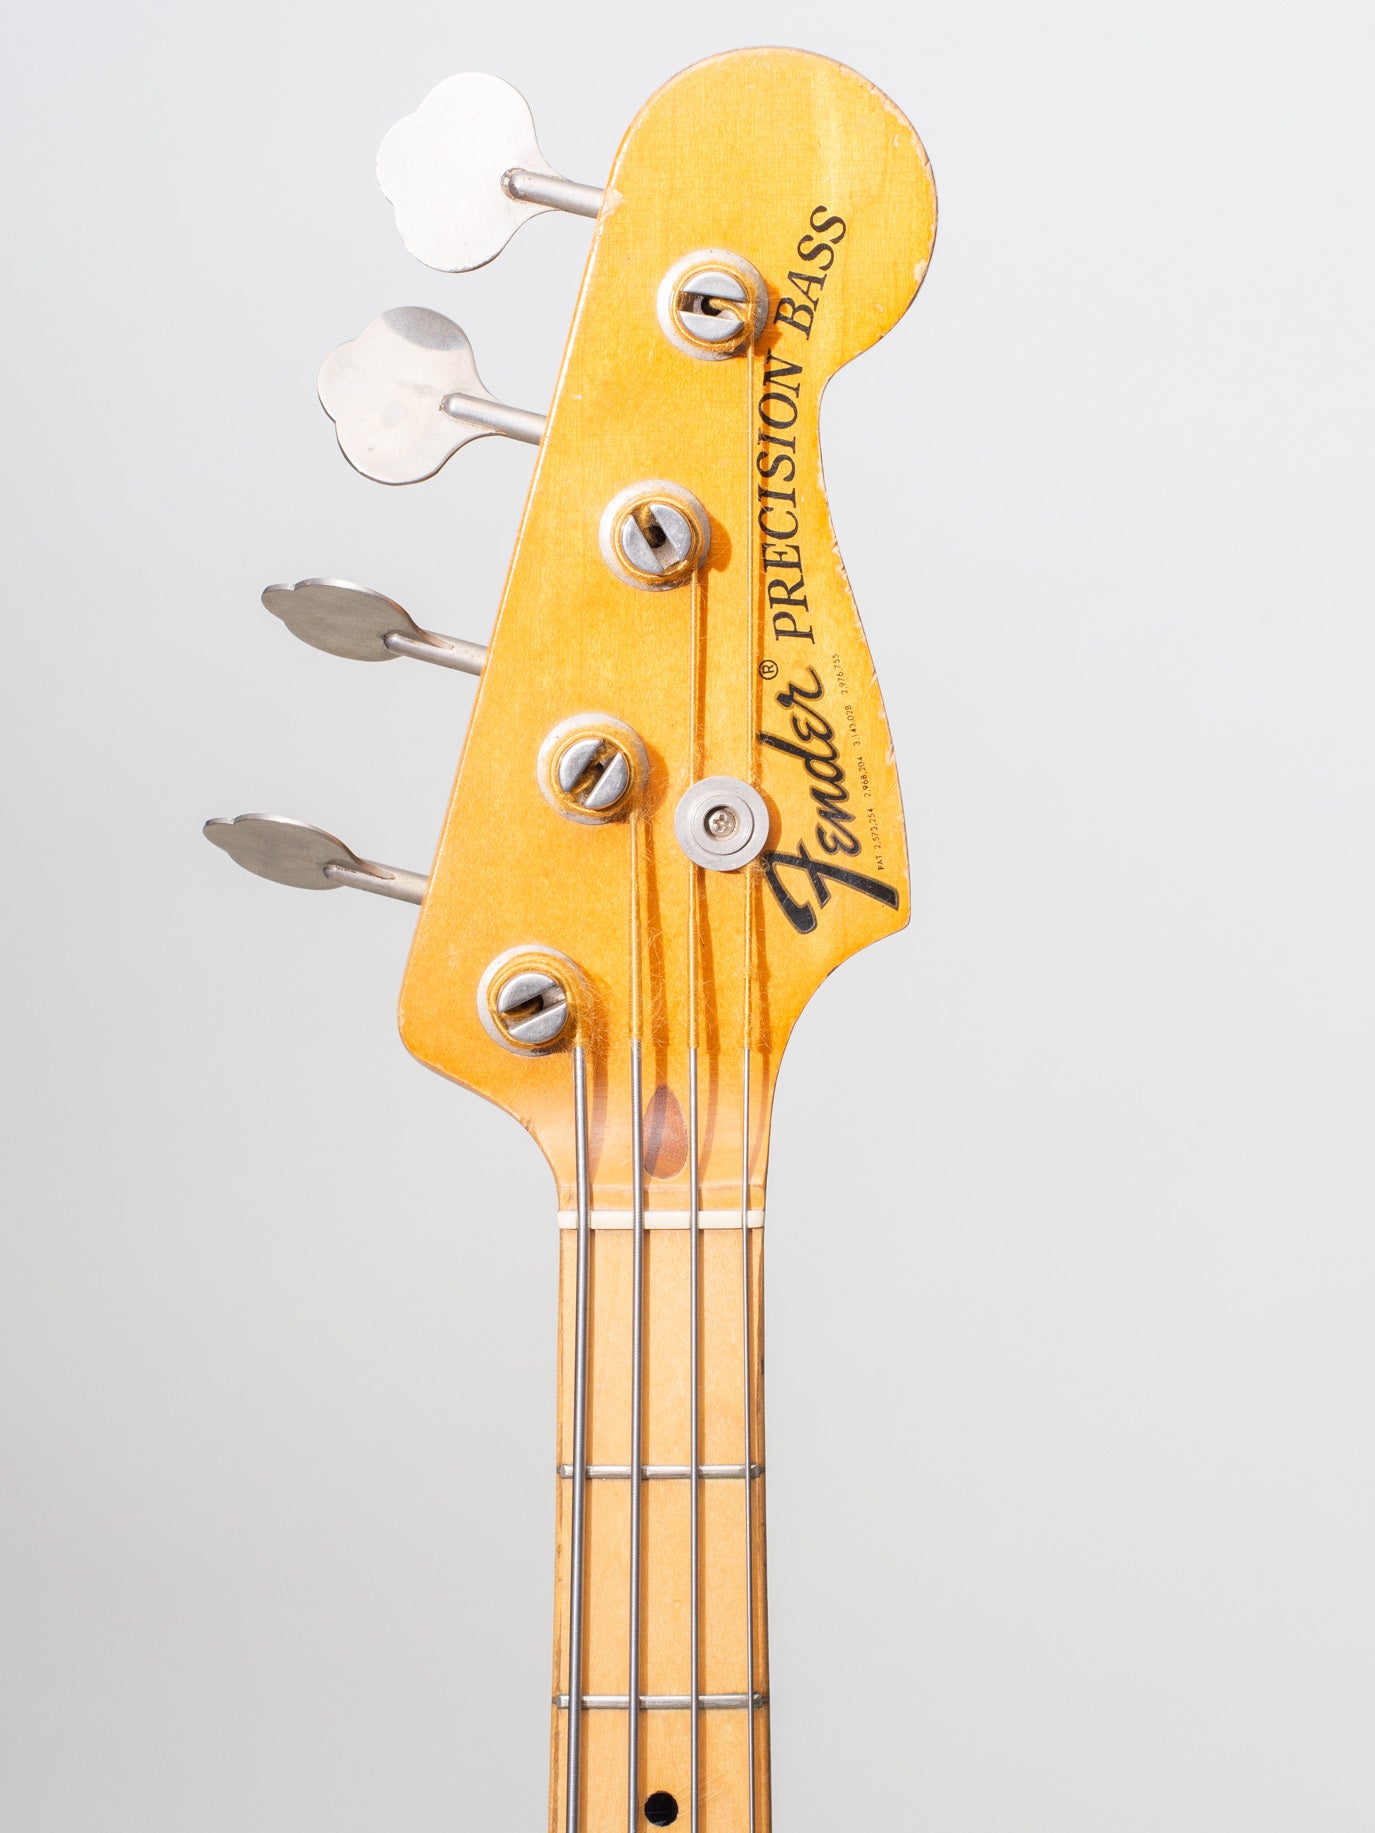 1971 Fender Precision